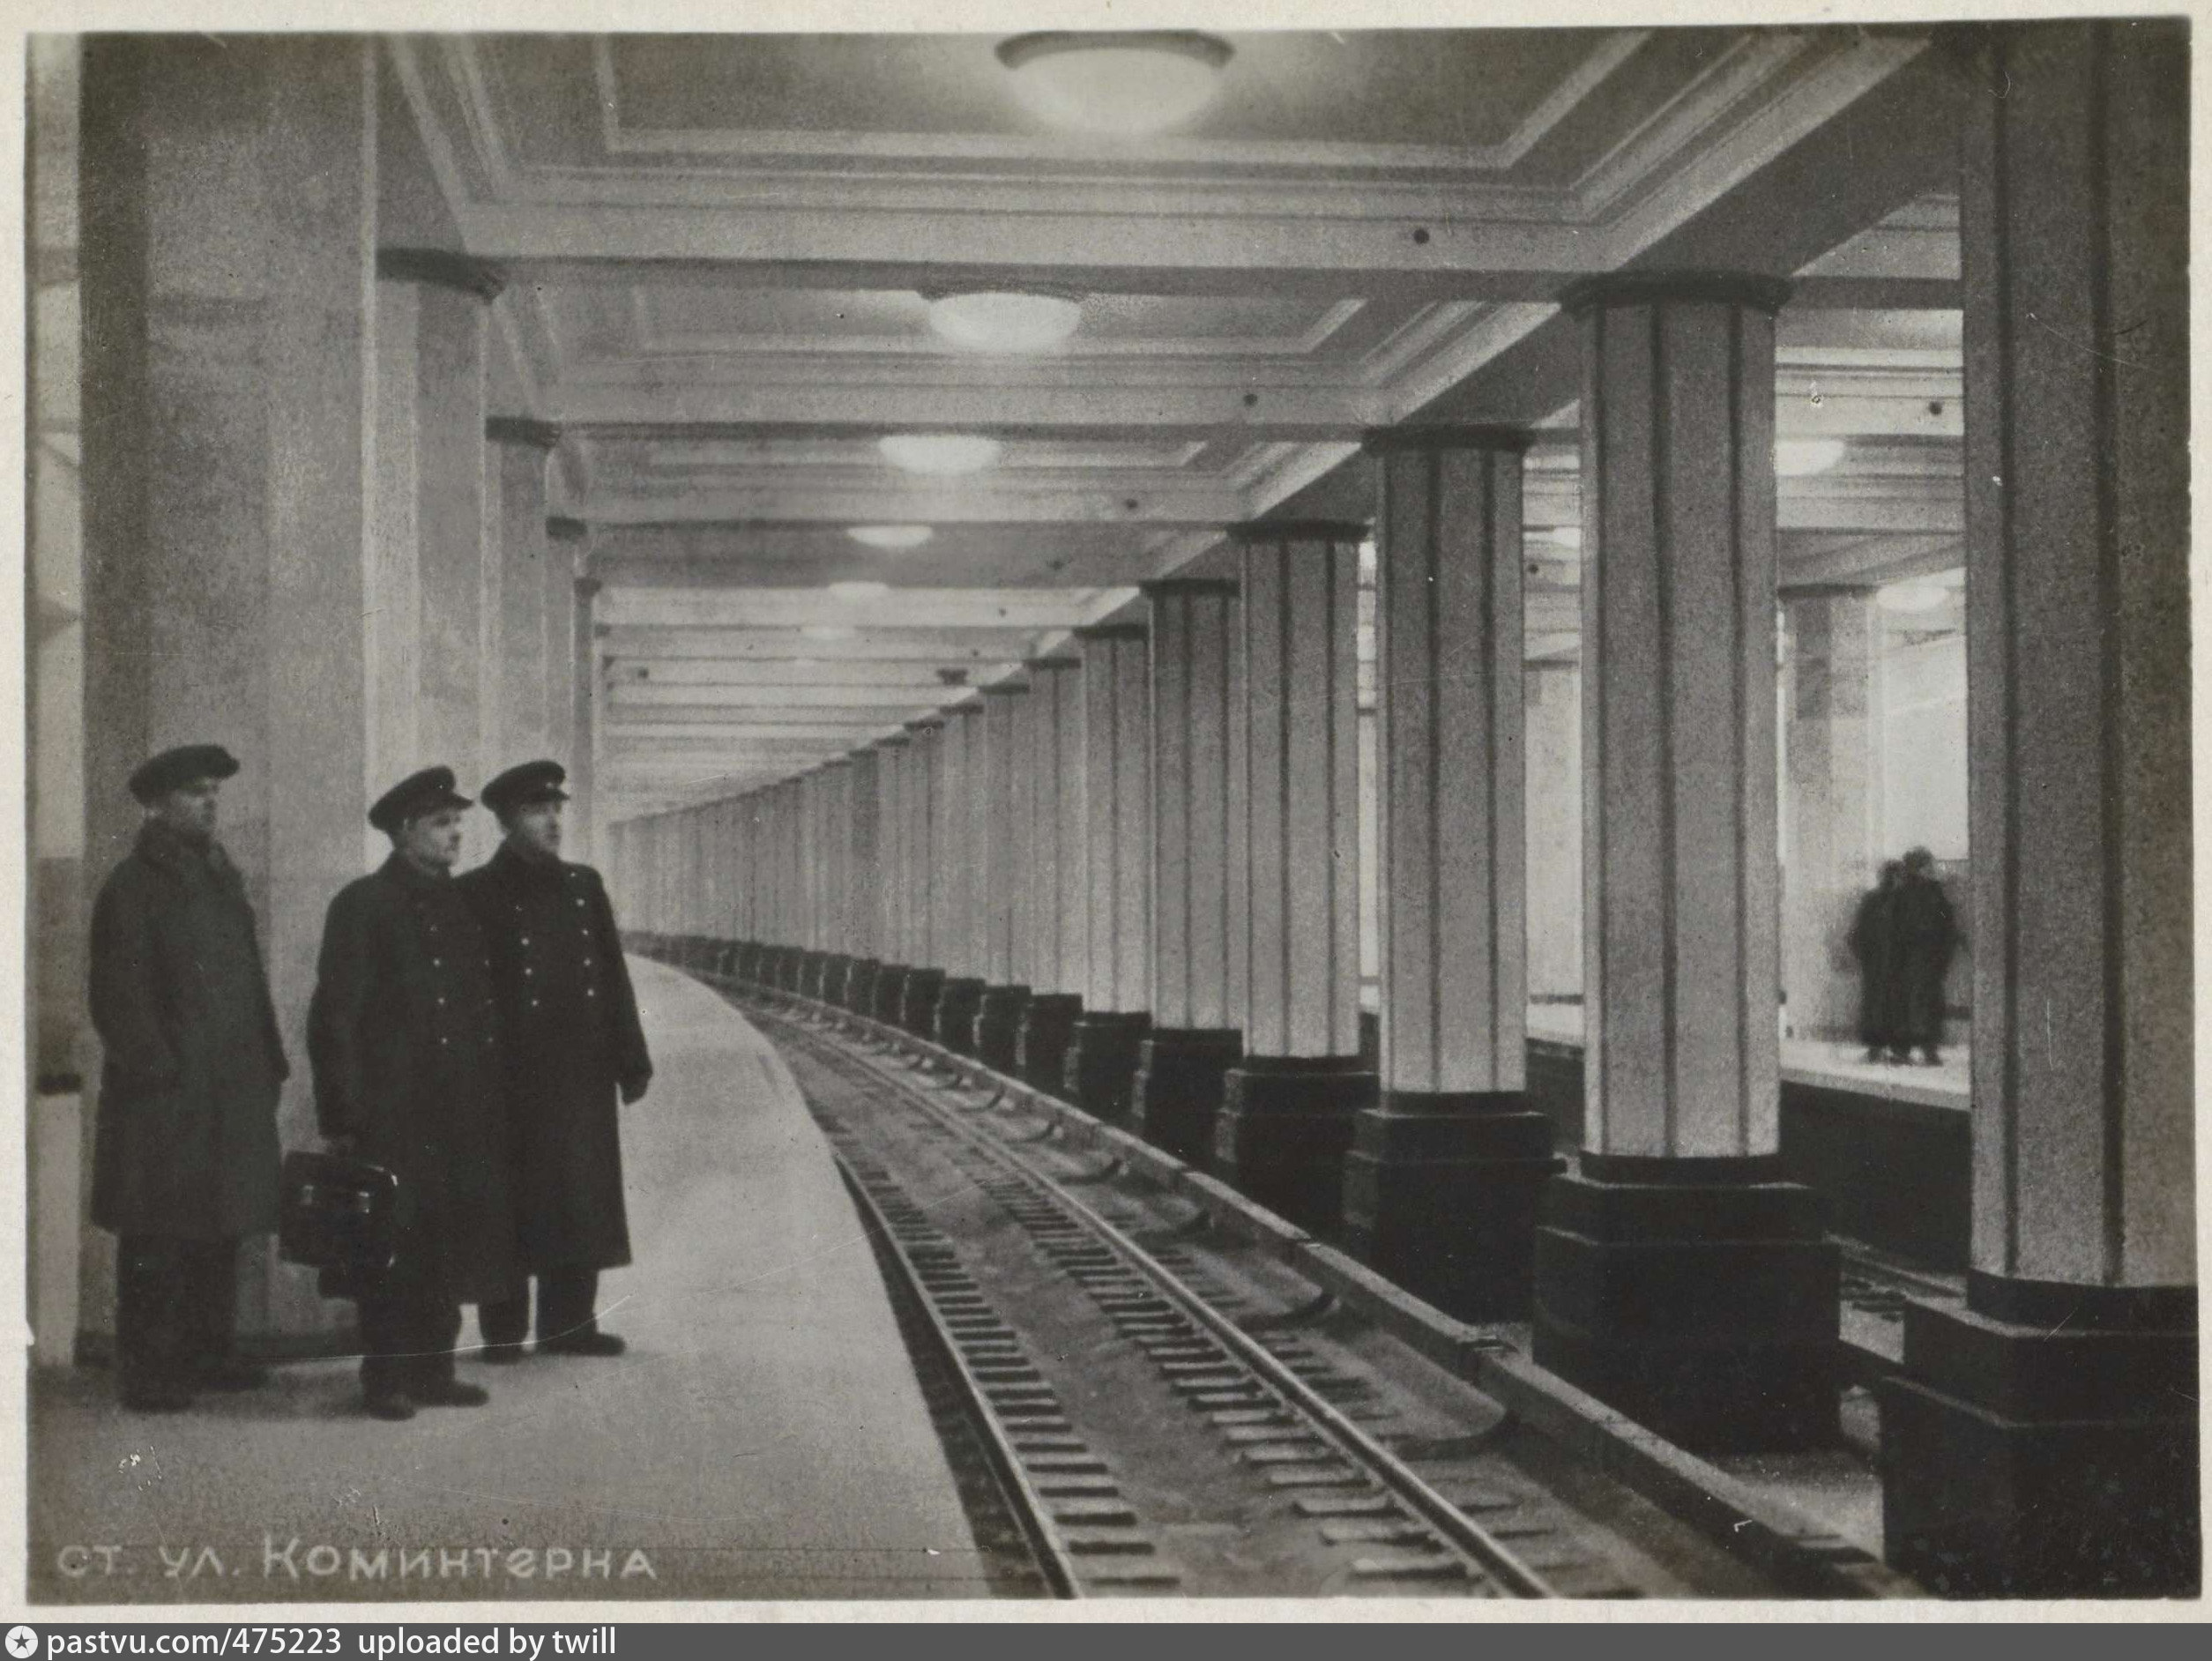 Открытие первого метрополитена